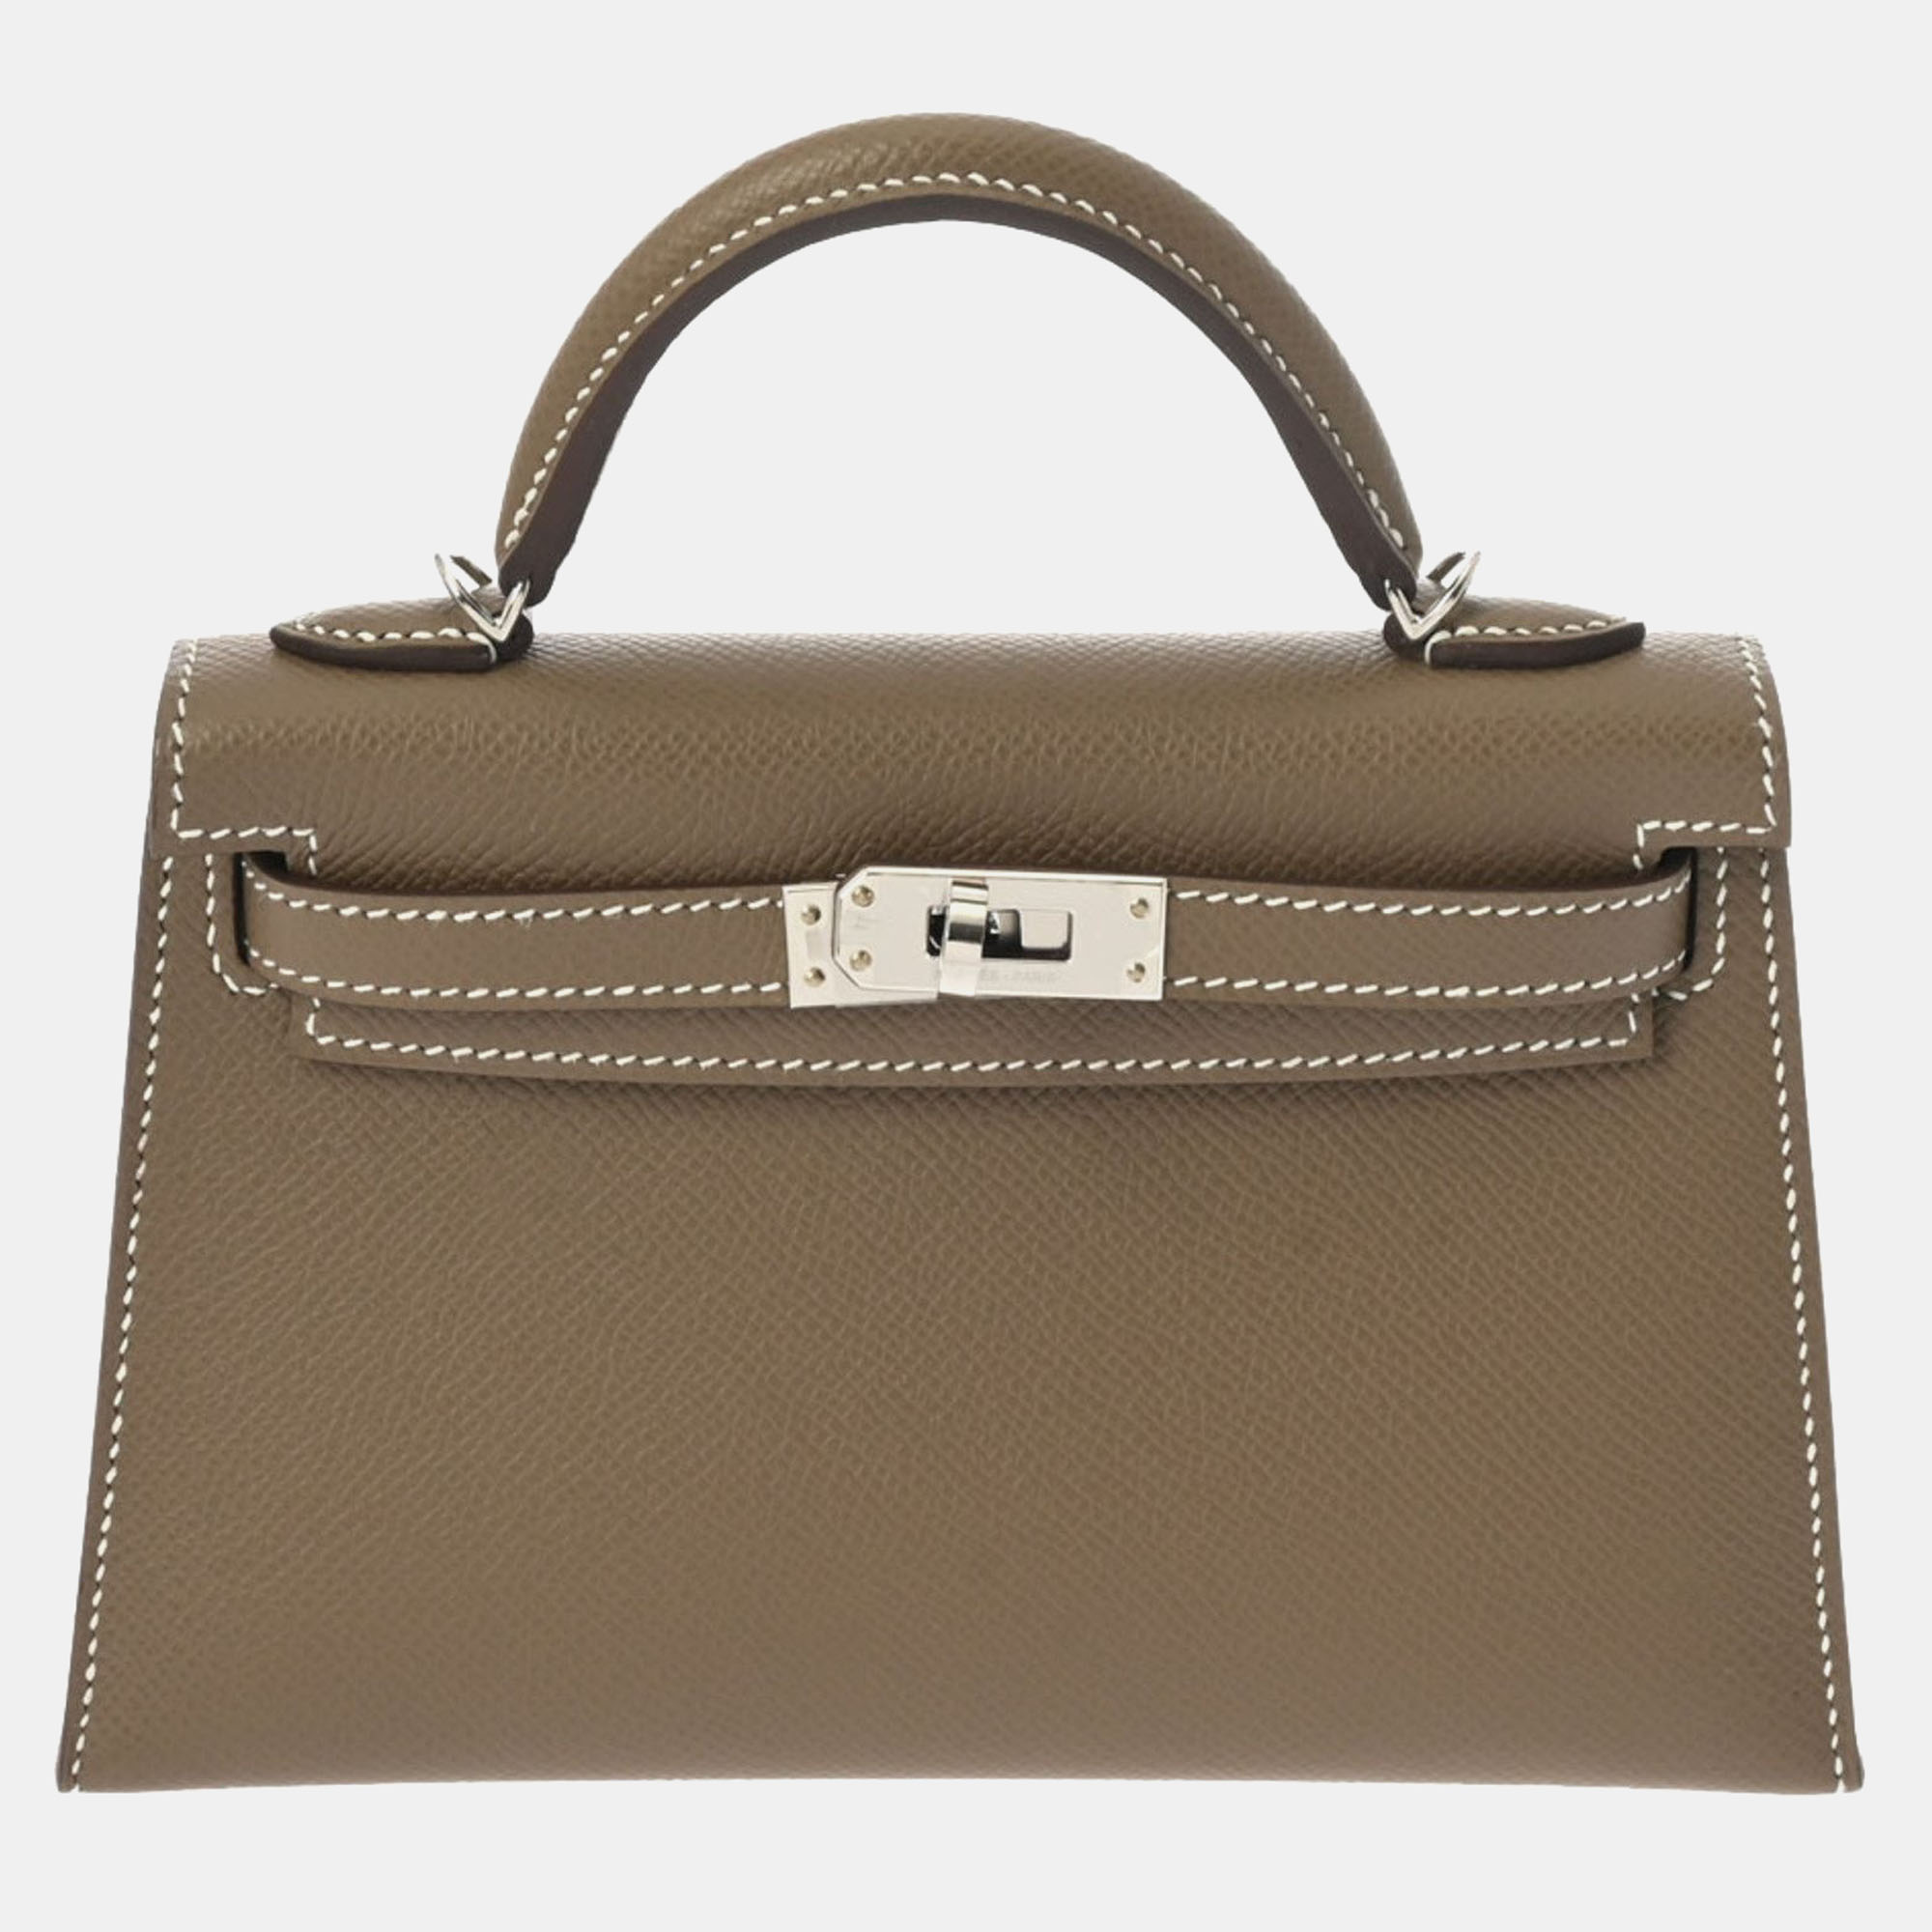 Hermes etoupe epsom leather palladium hardware kelly bag